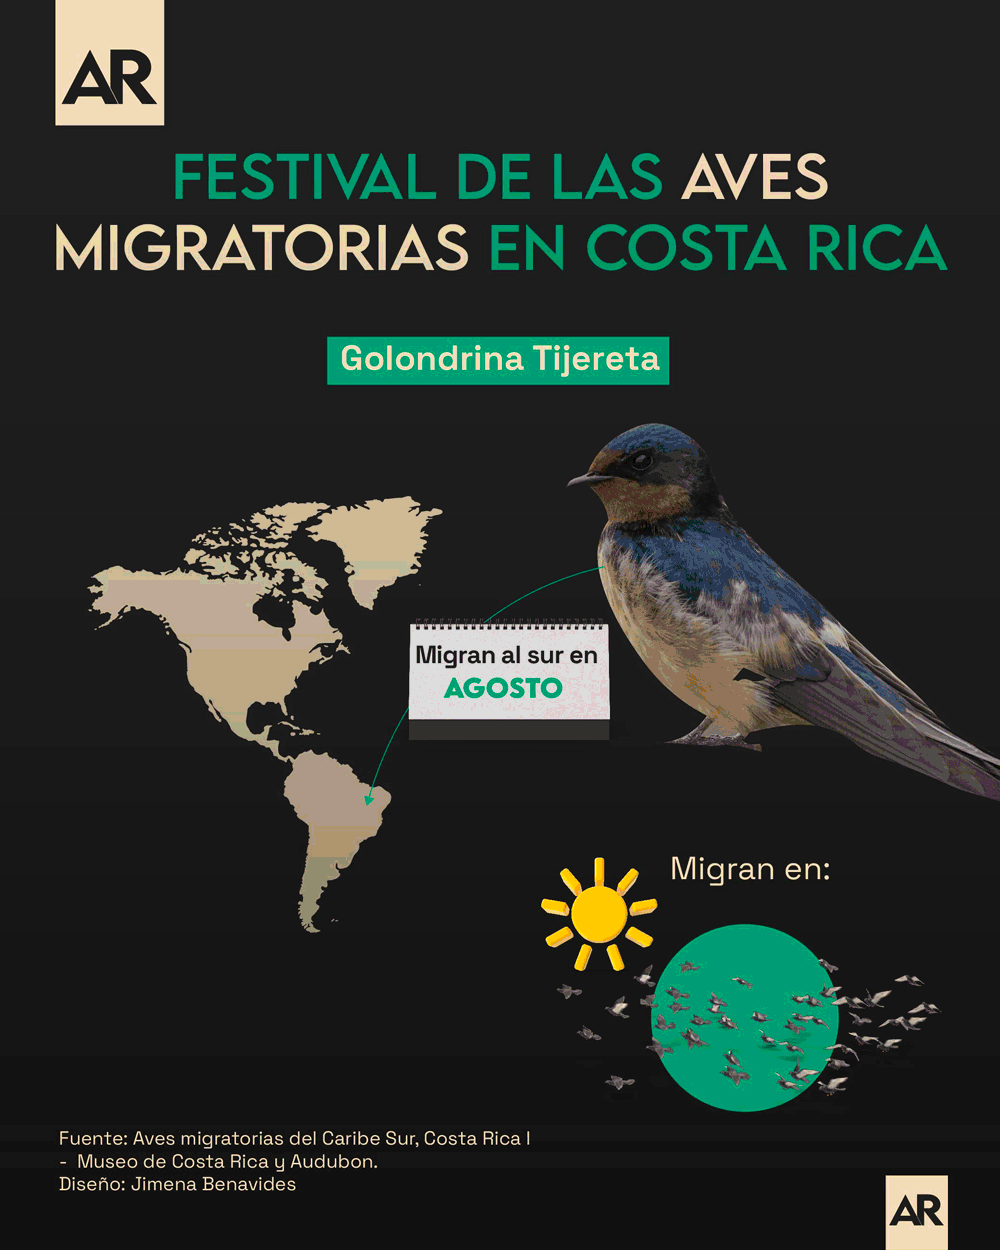 Aves migartorias,Costa Rica,Nacional